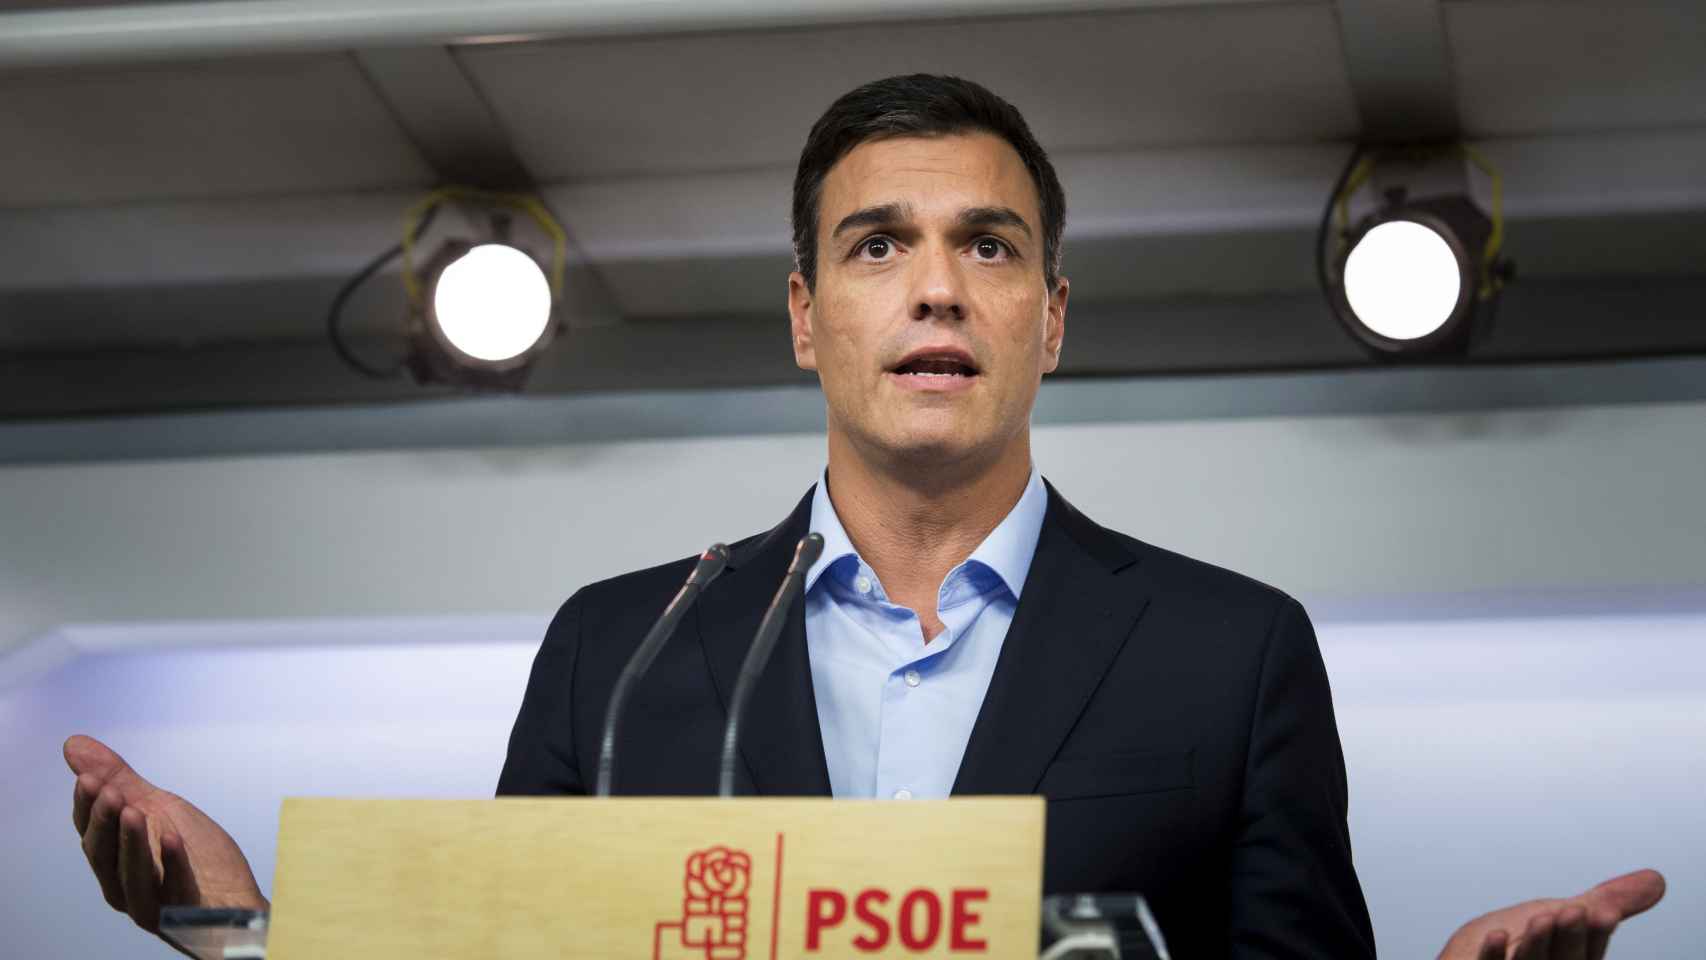 El líder del PSOE, Pedro Sánchez, en una imagen de archivo.